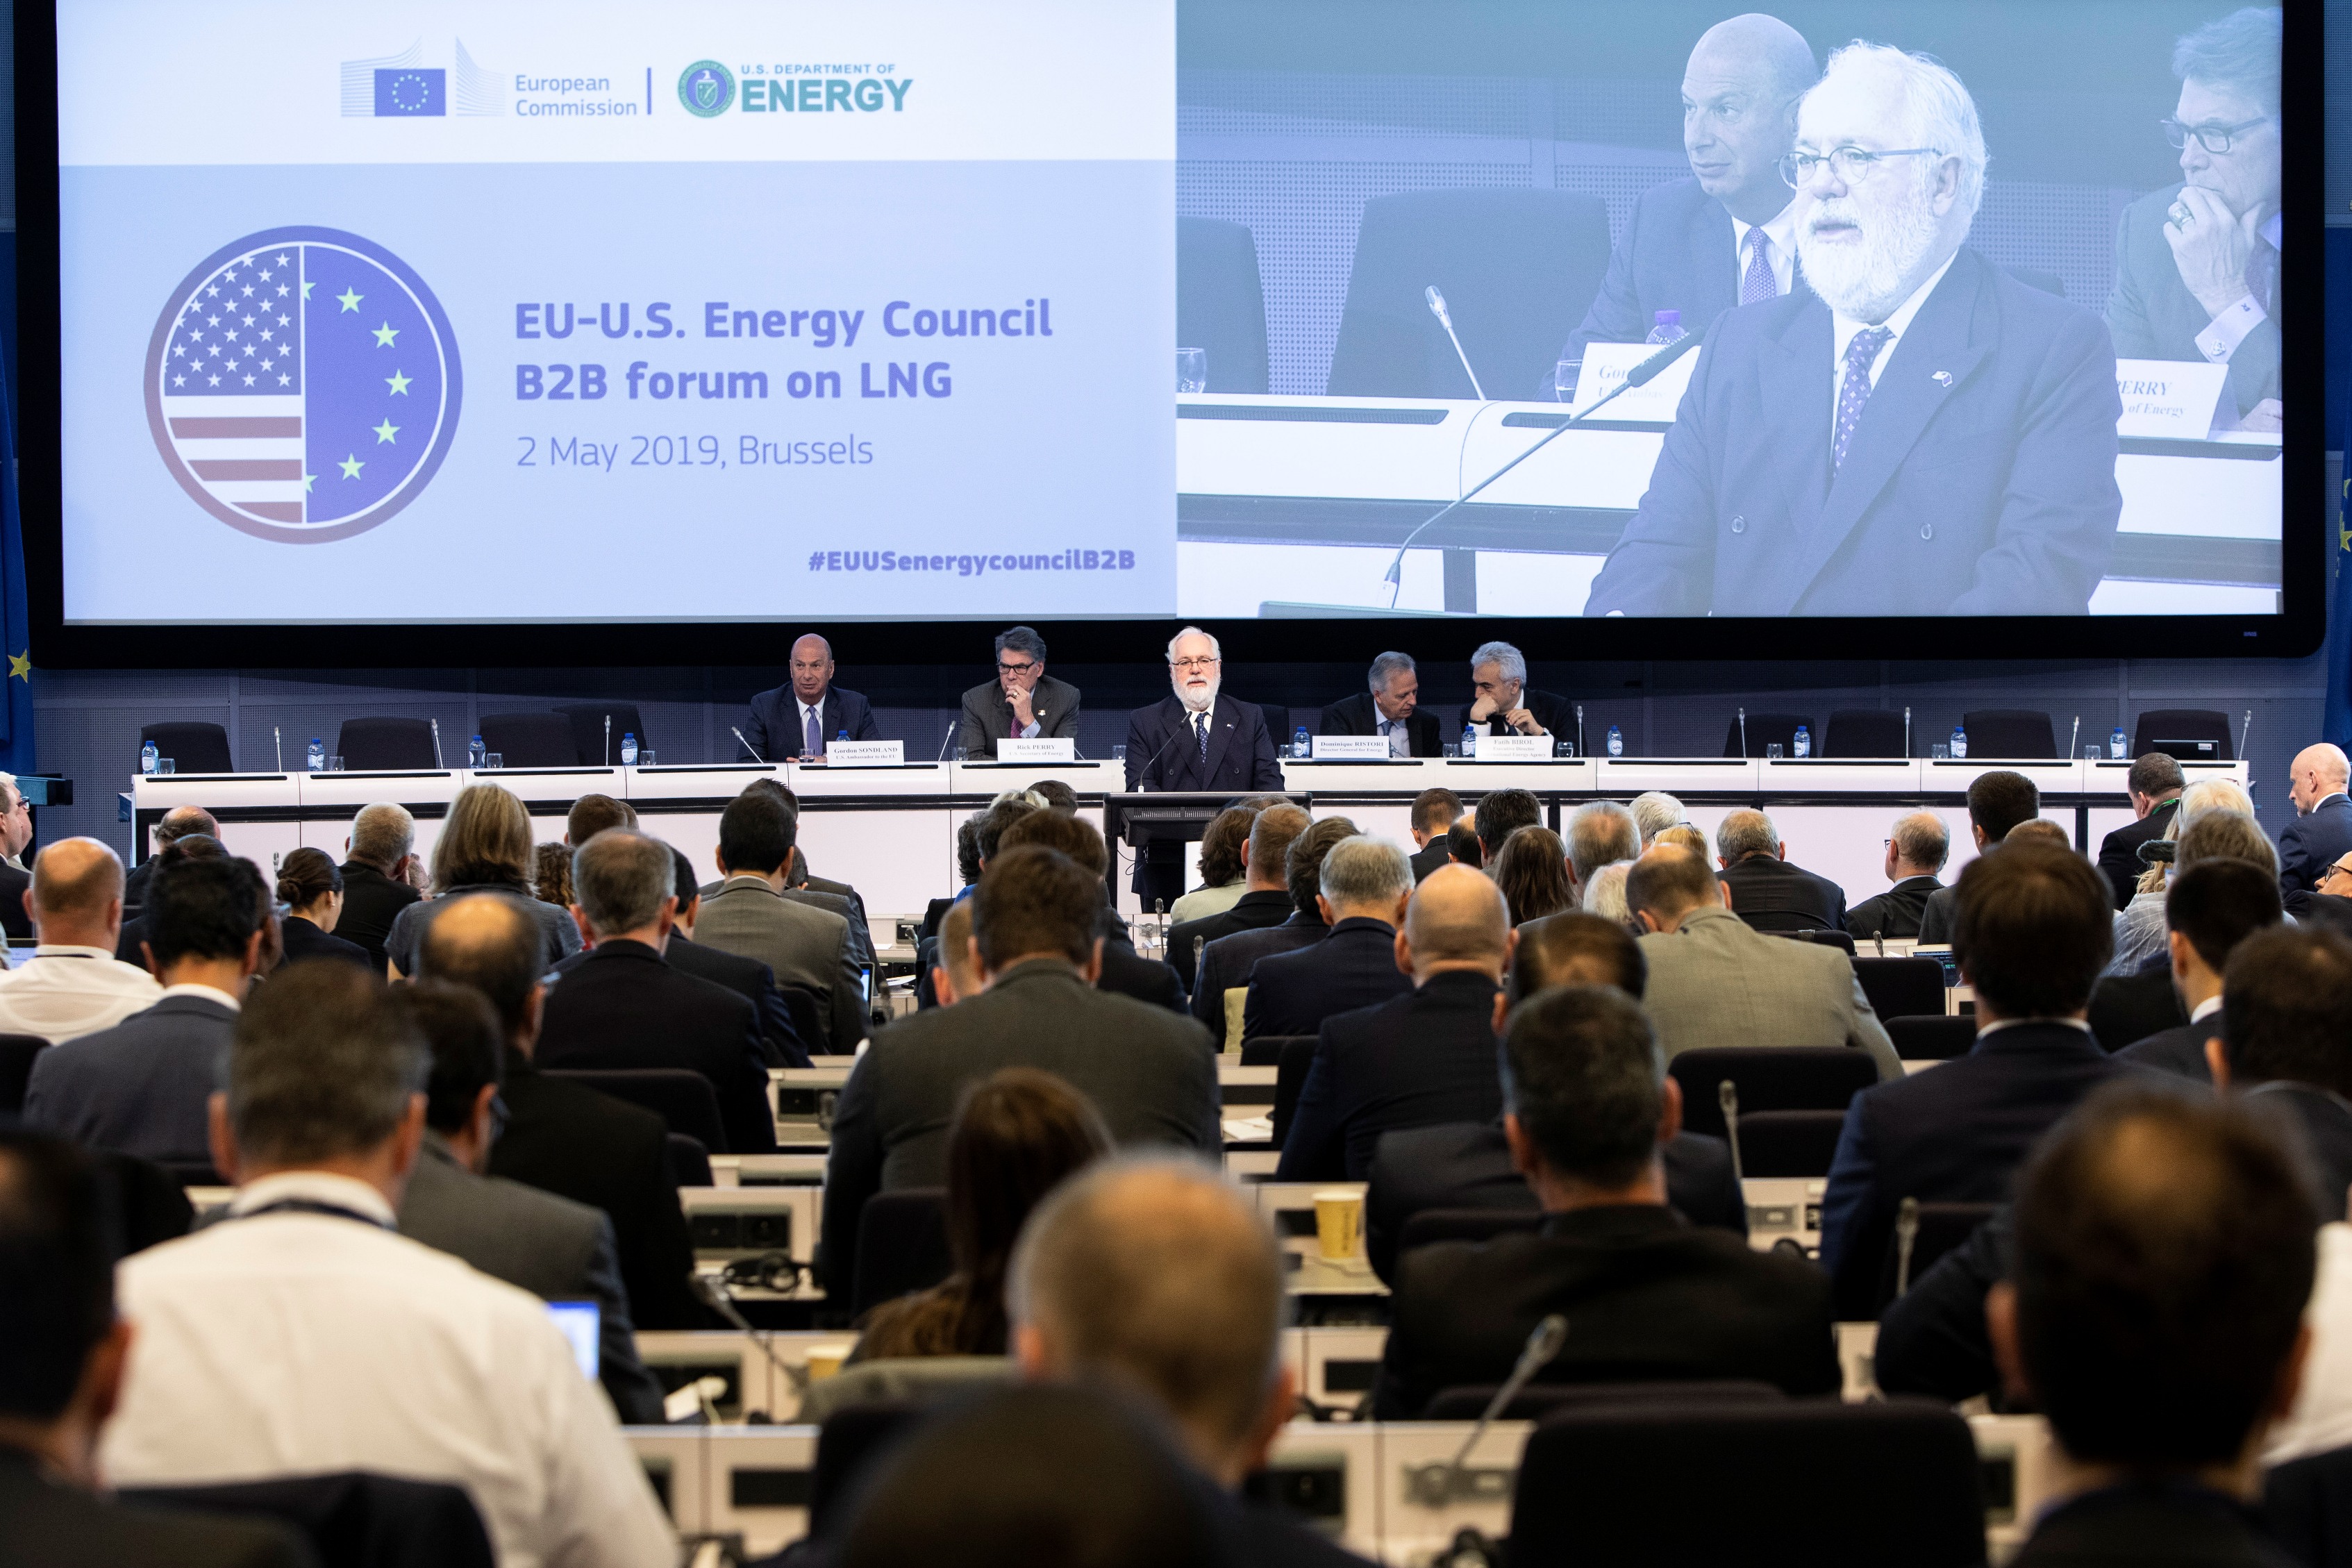  اجتماع كبار المسؤولين التنفيذيين في قطاع الطاقة من الاتحاد الأوروبي والولايات المتحدة في بروكسل